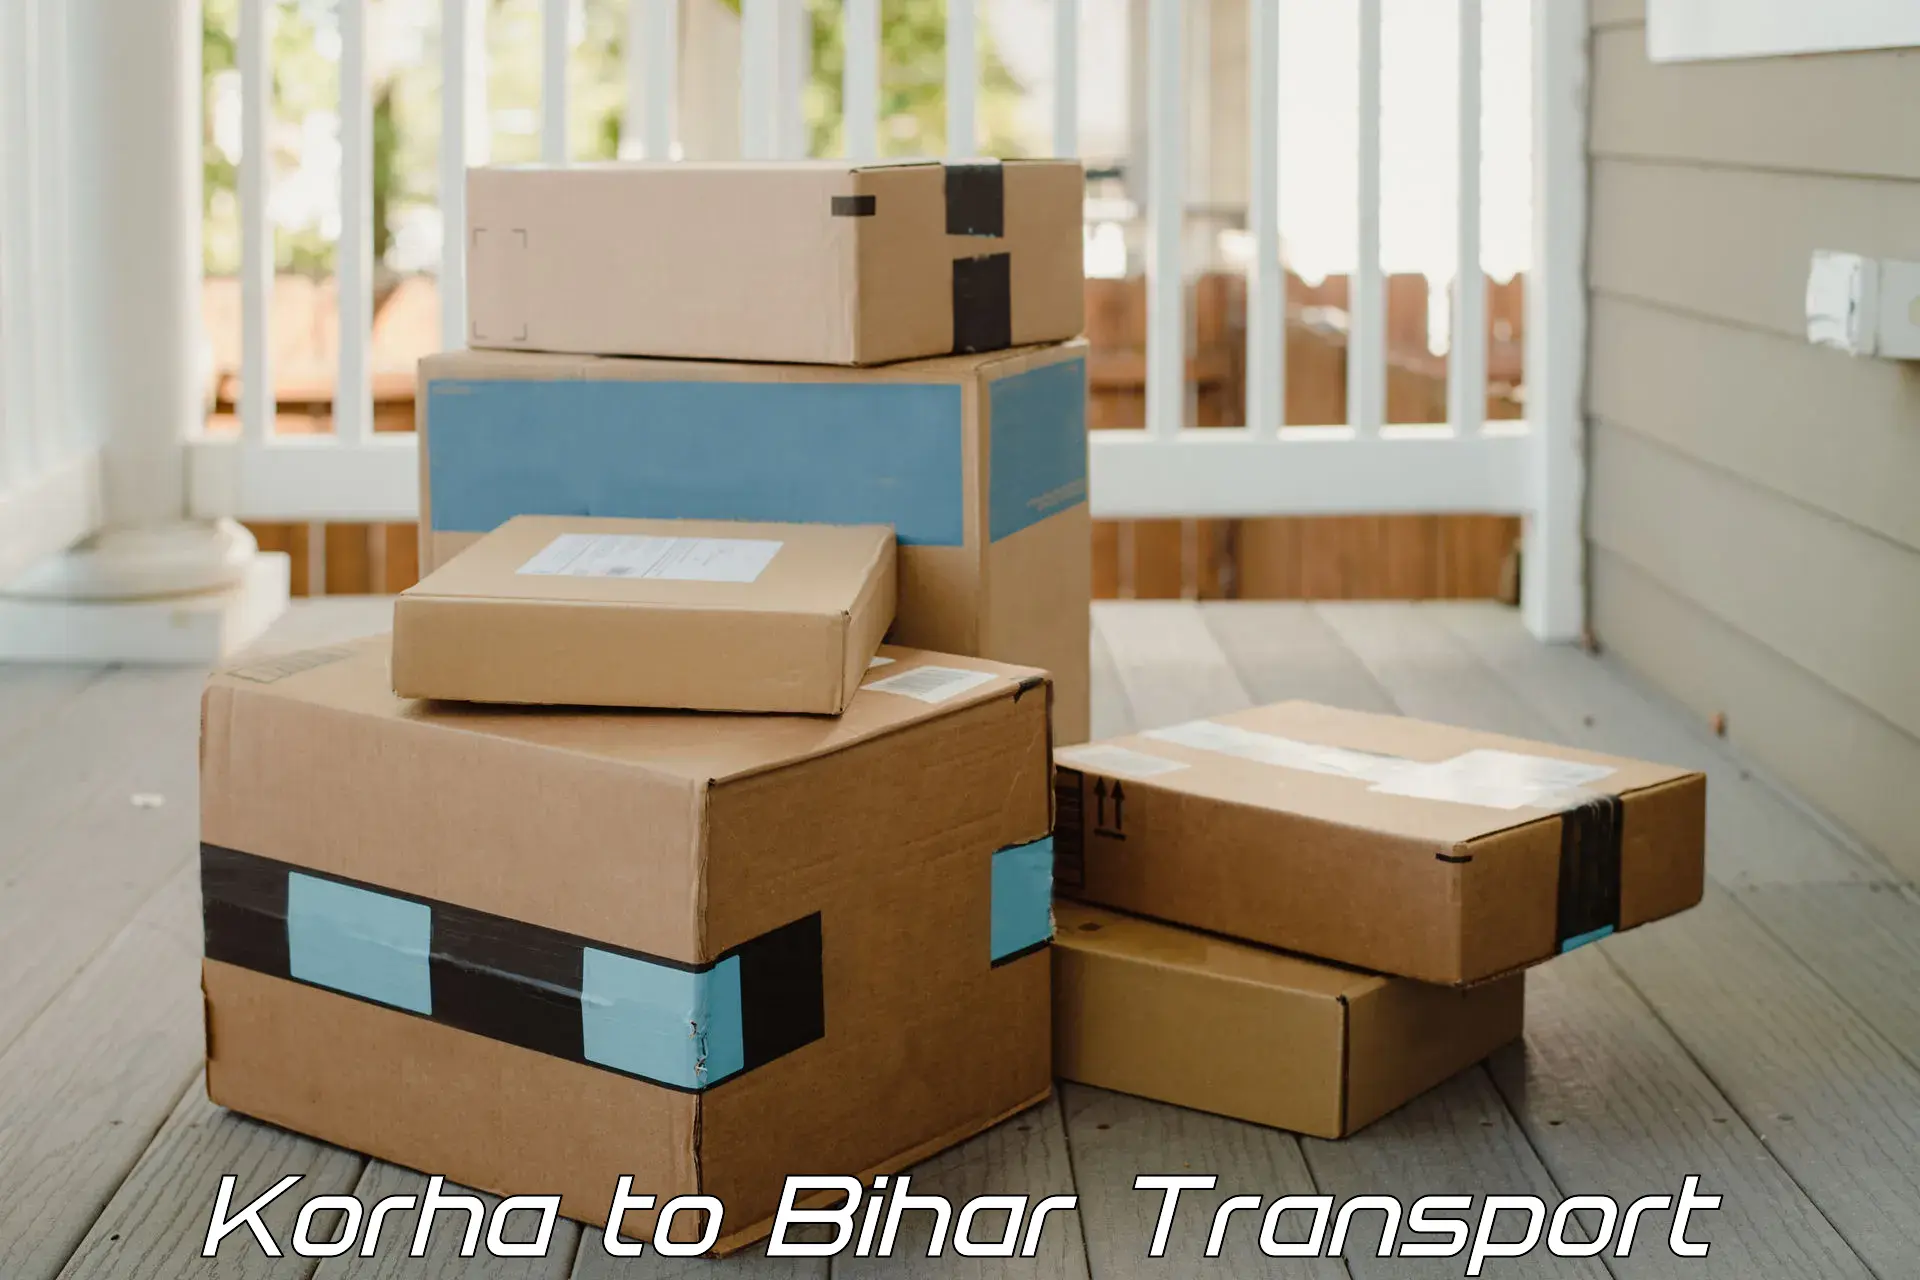 Goods delivery service Korha to Bihar